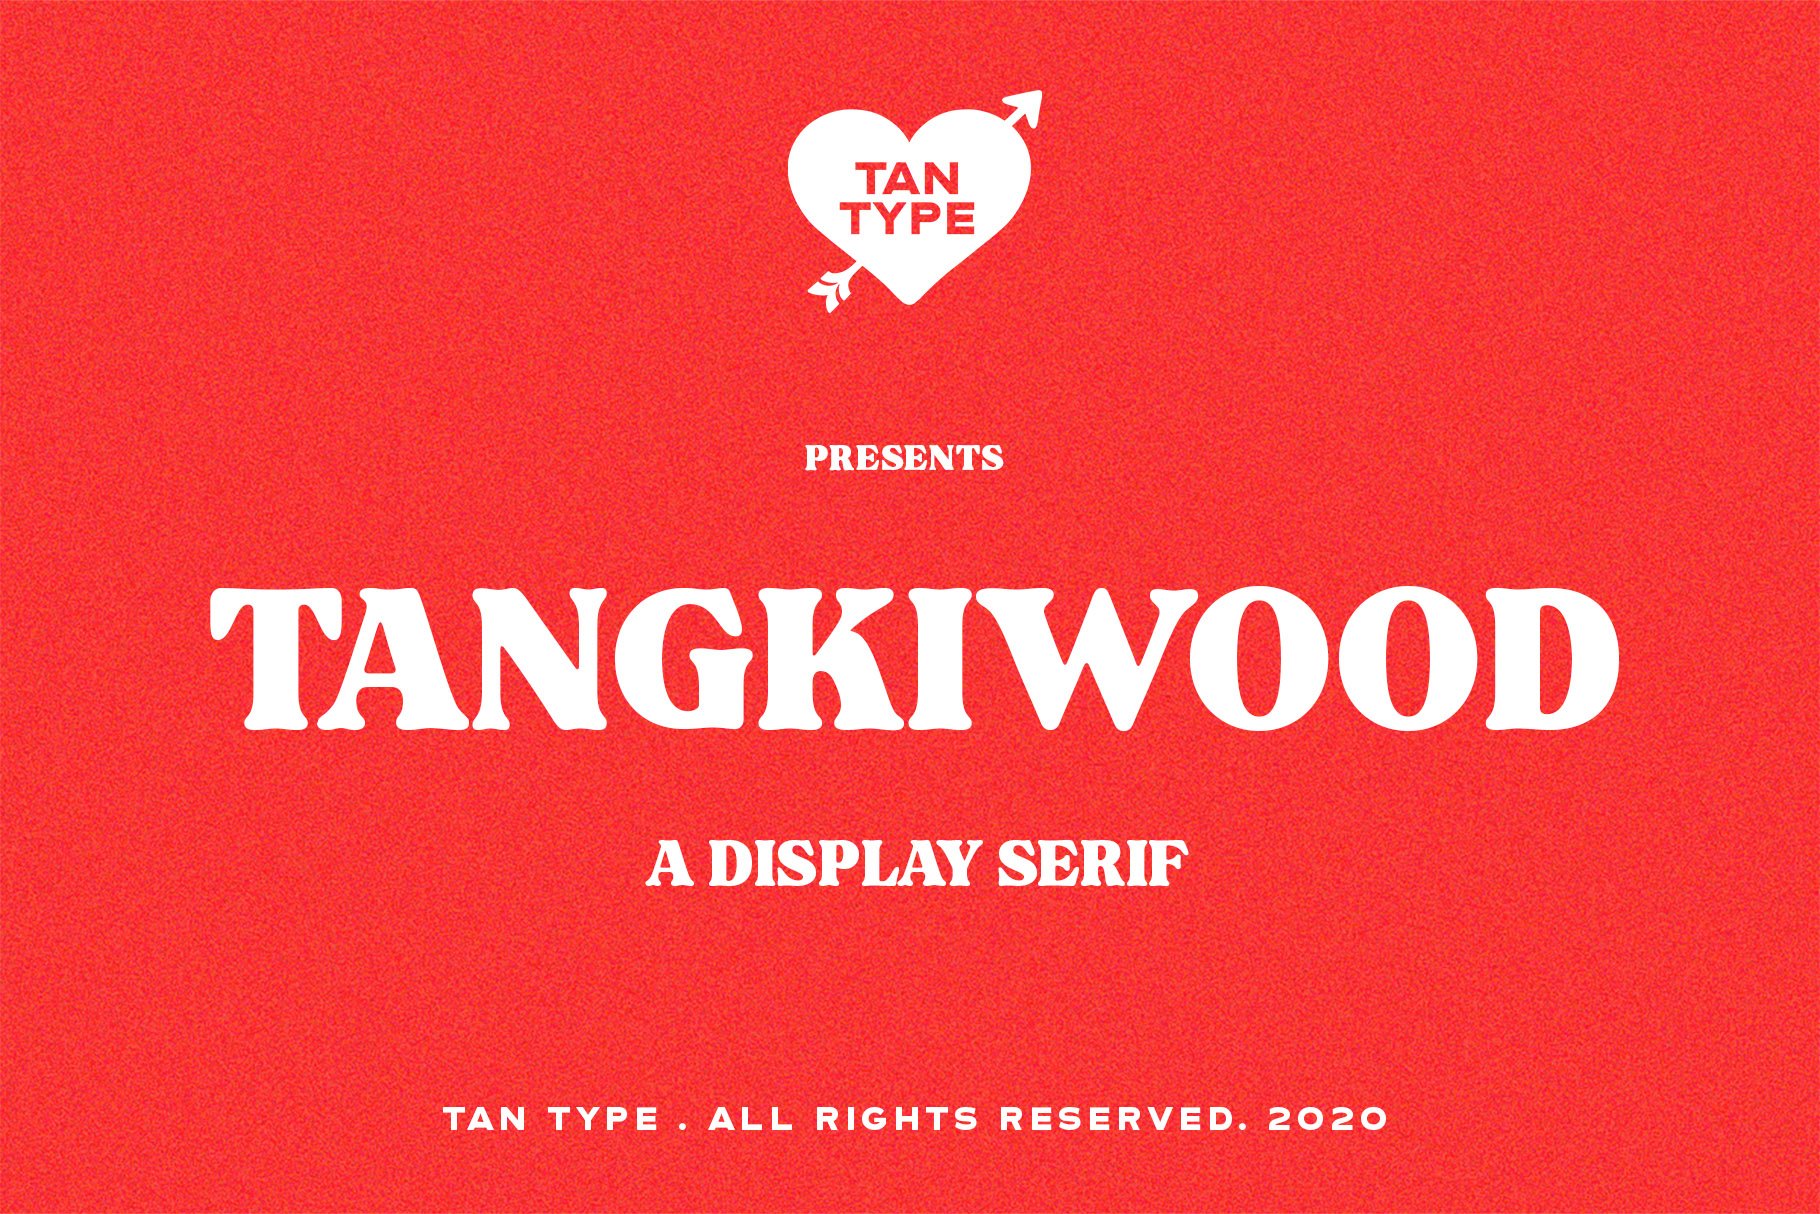 TAN - Tangkiwood cover image.